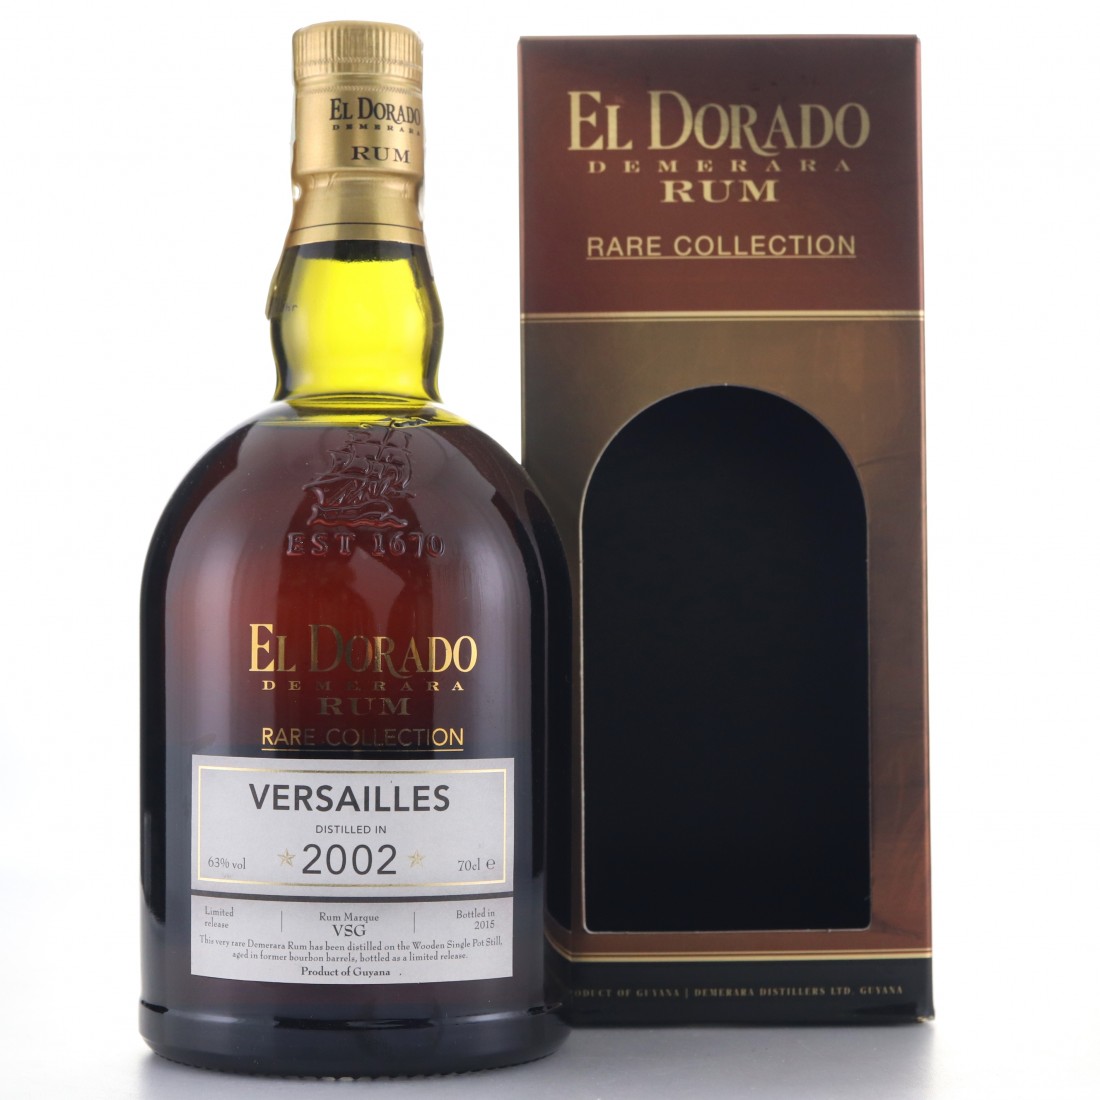 El Dorado VERSAILLES Rare Collection Limited Release 2002, 63%